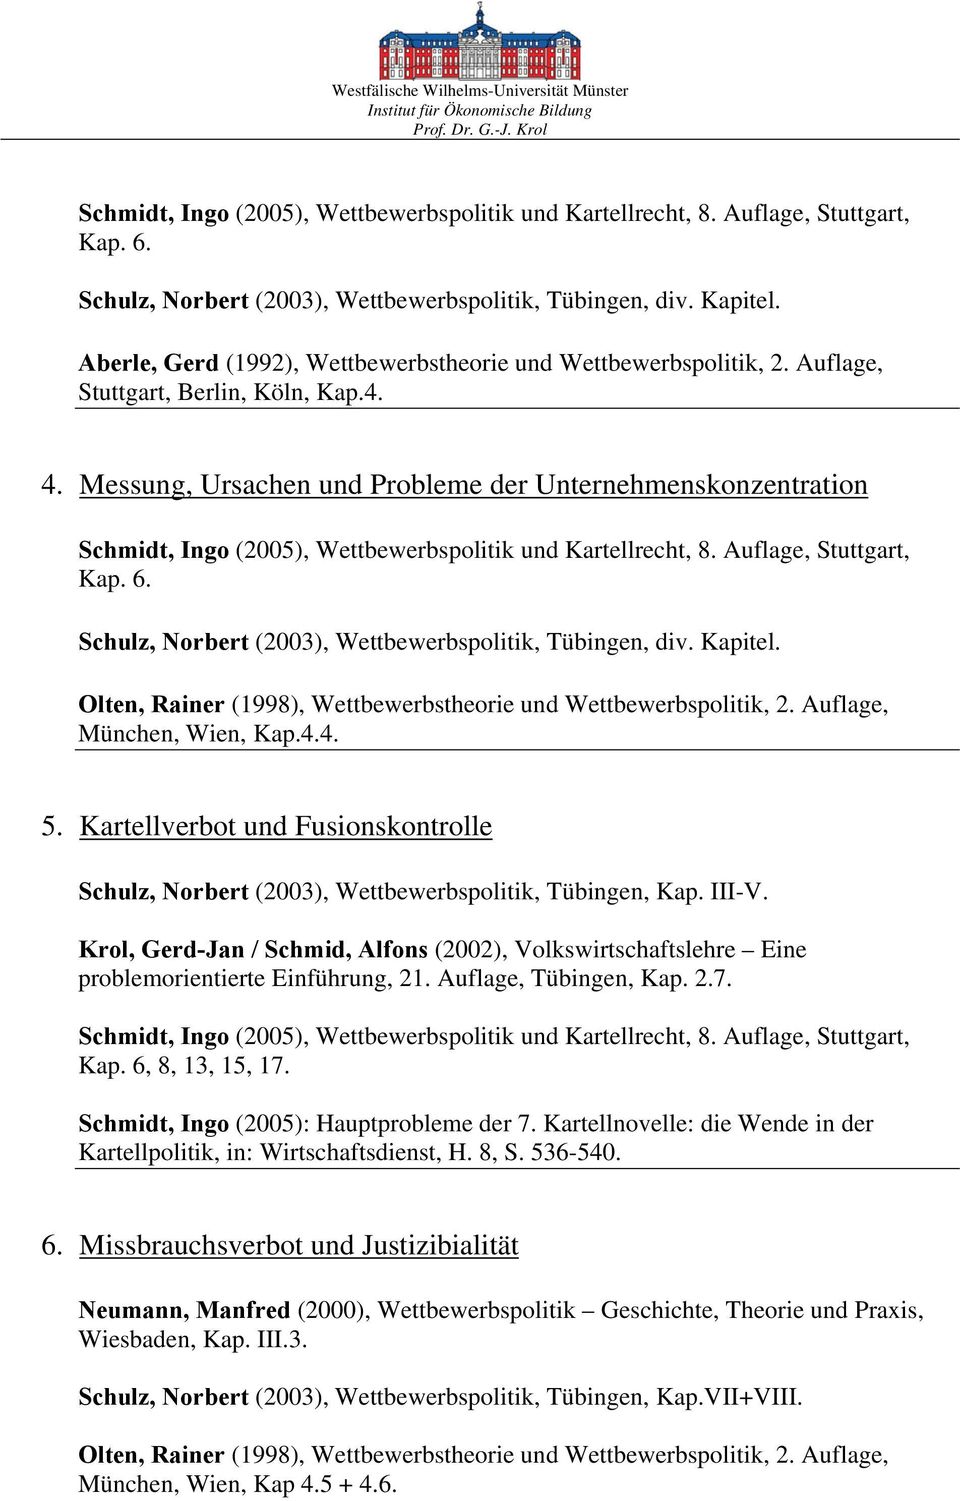 Kartellverbot und Fusionskontrolle Schulz, Norbert (2003), Wettbewerbspolitik, Tübingen, Kap. III-V. problemorientierte Einführung, 21. Auflage, Tübingen, Kap. 2.7. Kap. 6, 8, 13, 15, 17.